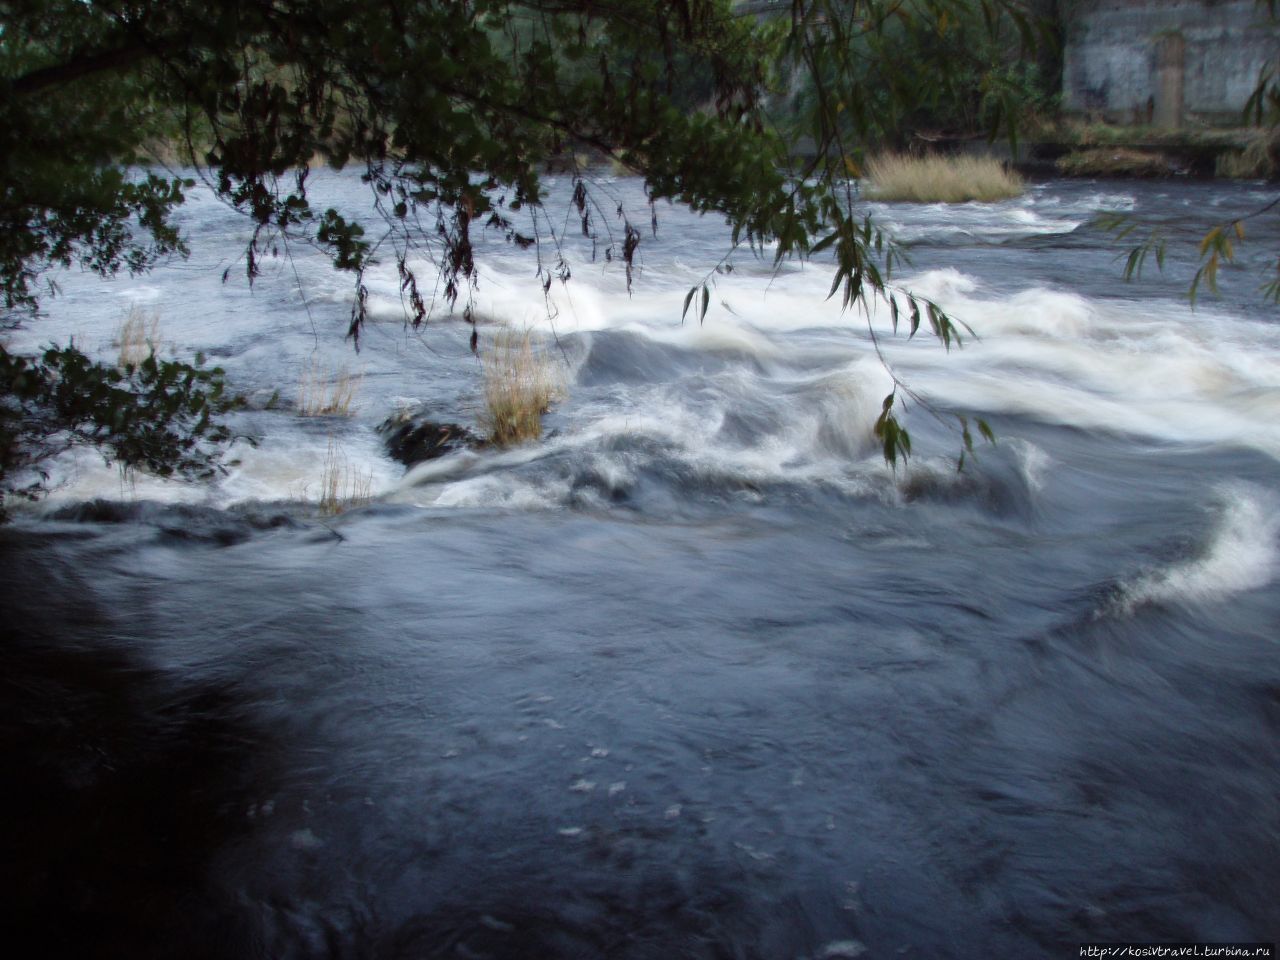 Rapids on the river Dee in Llangollen